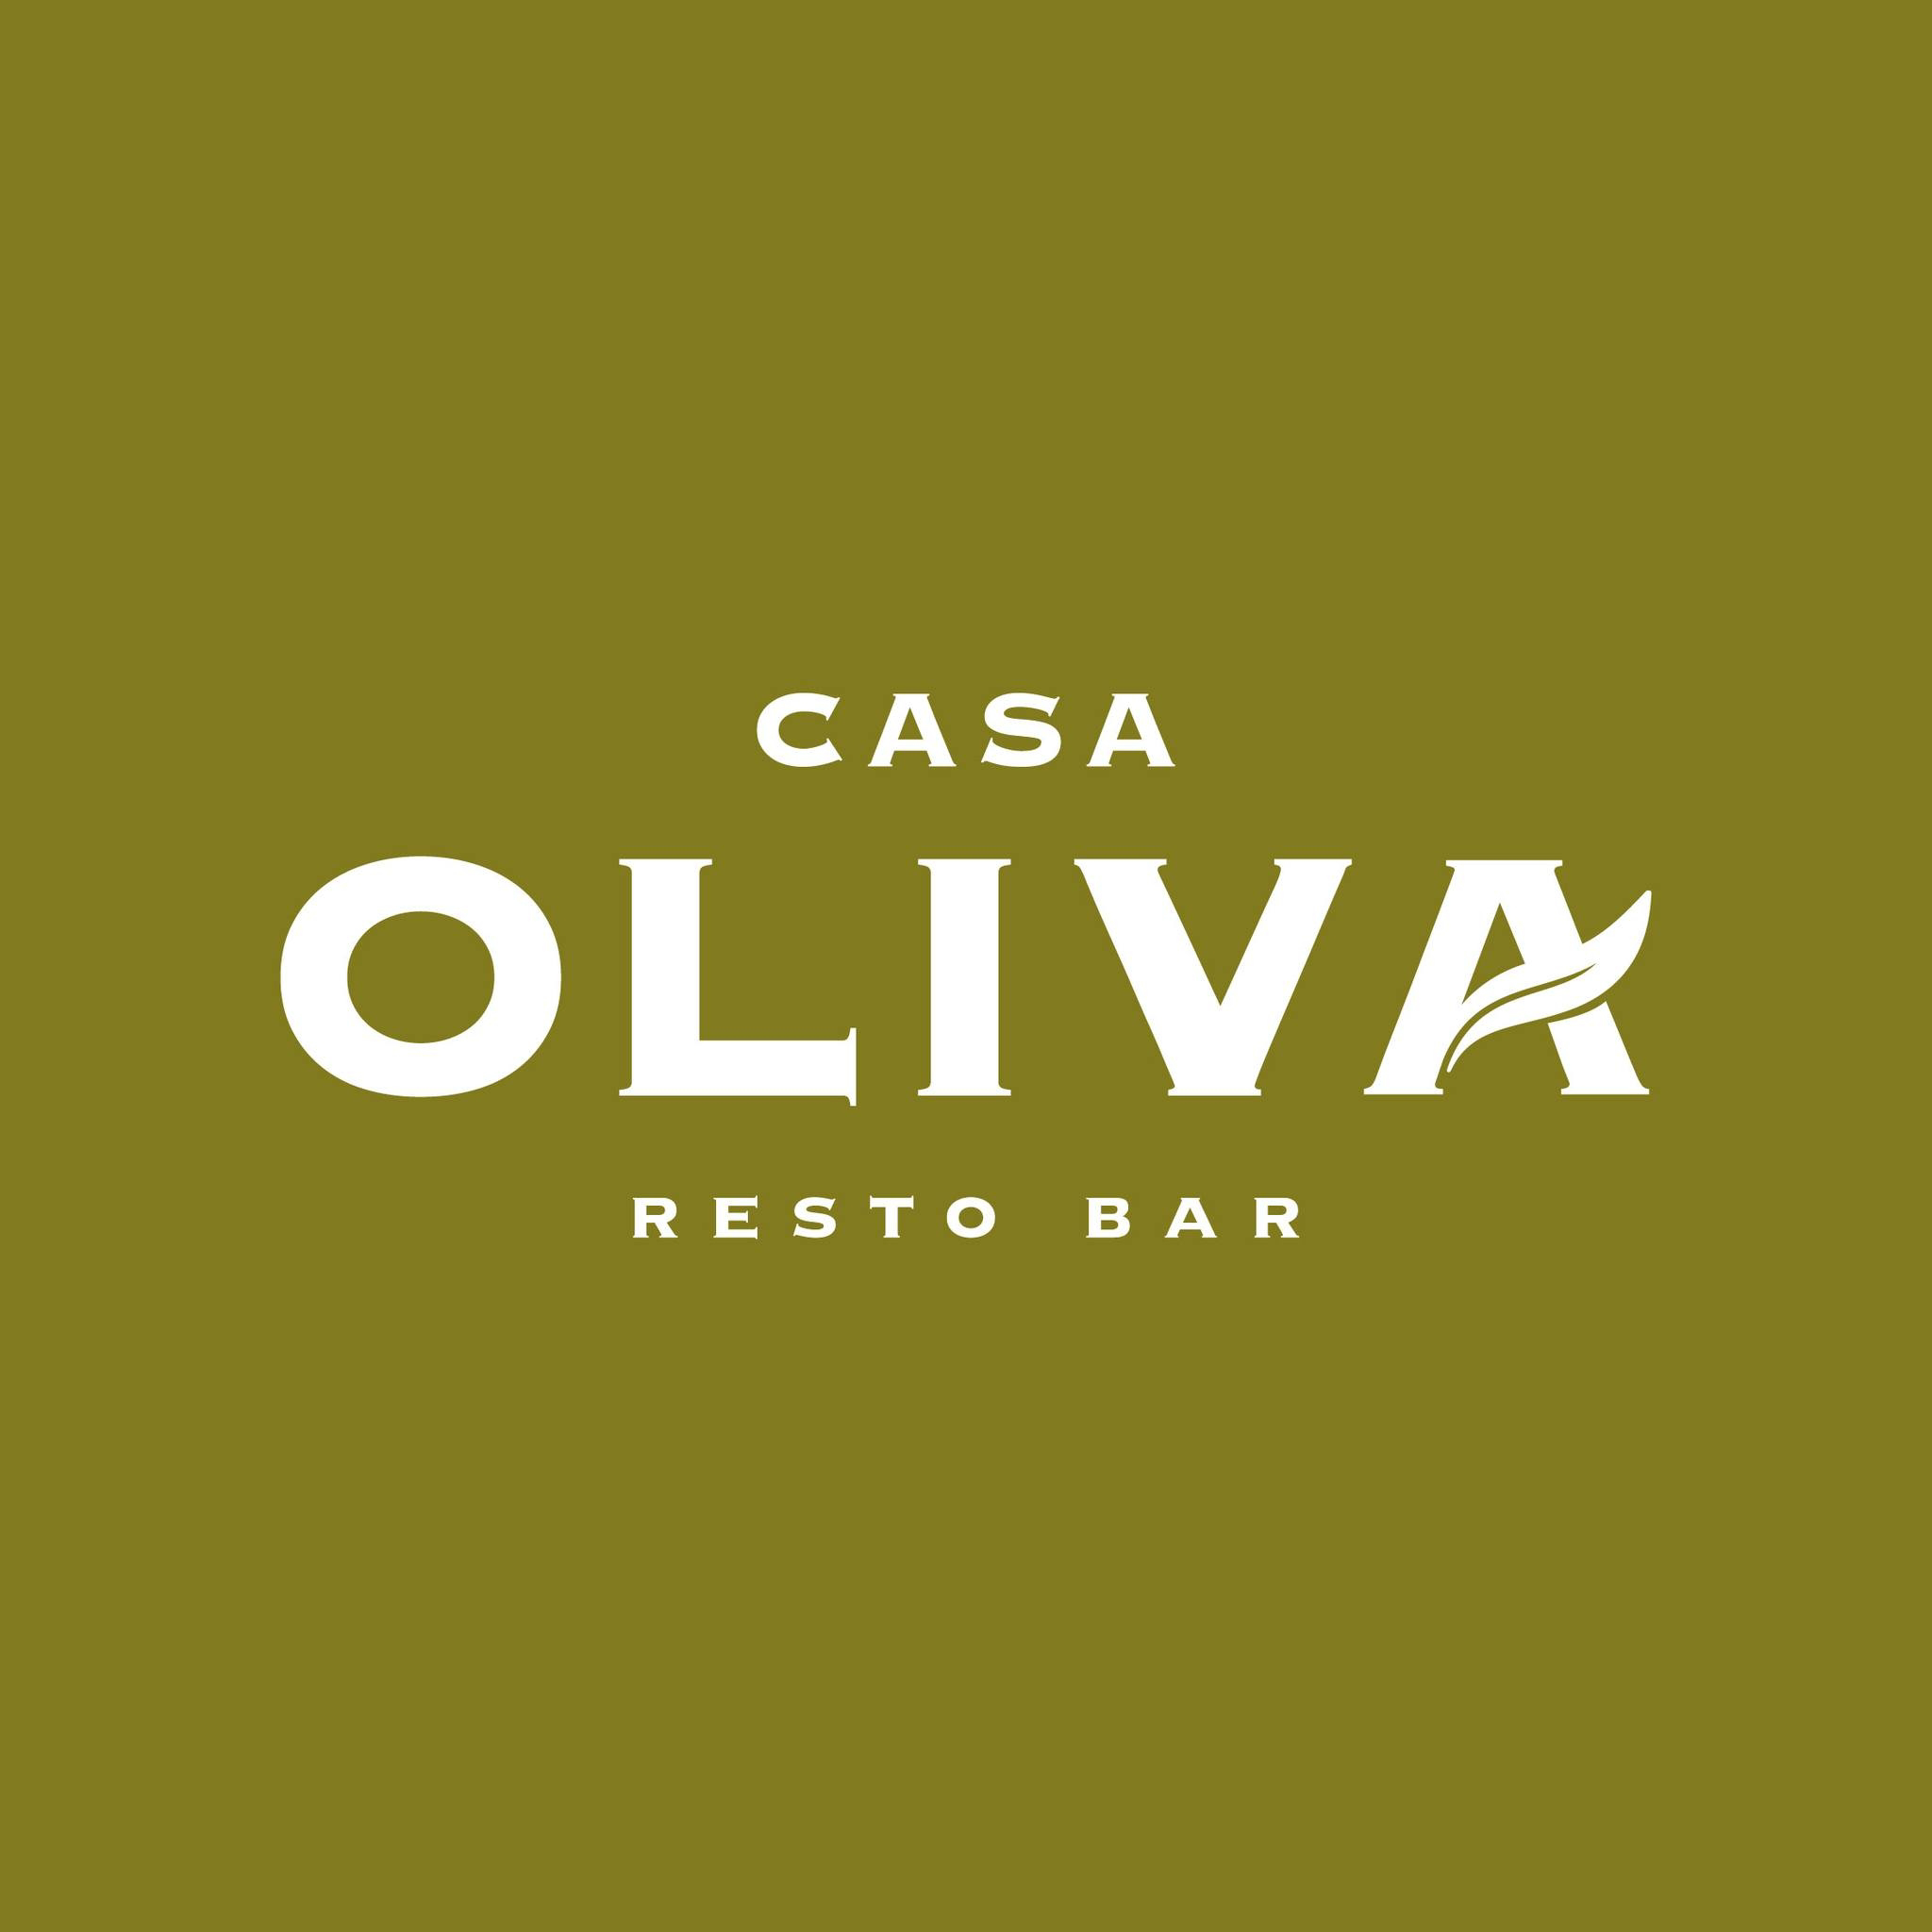 Casa Oliva - Resto Bar